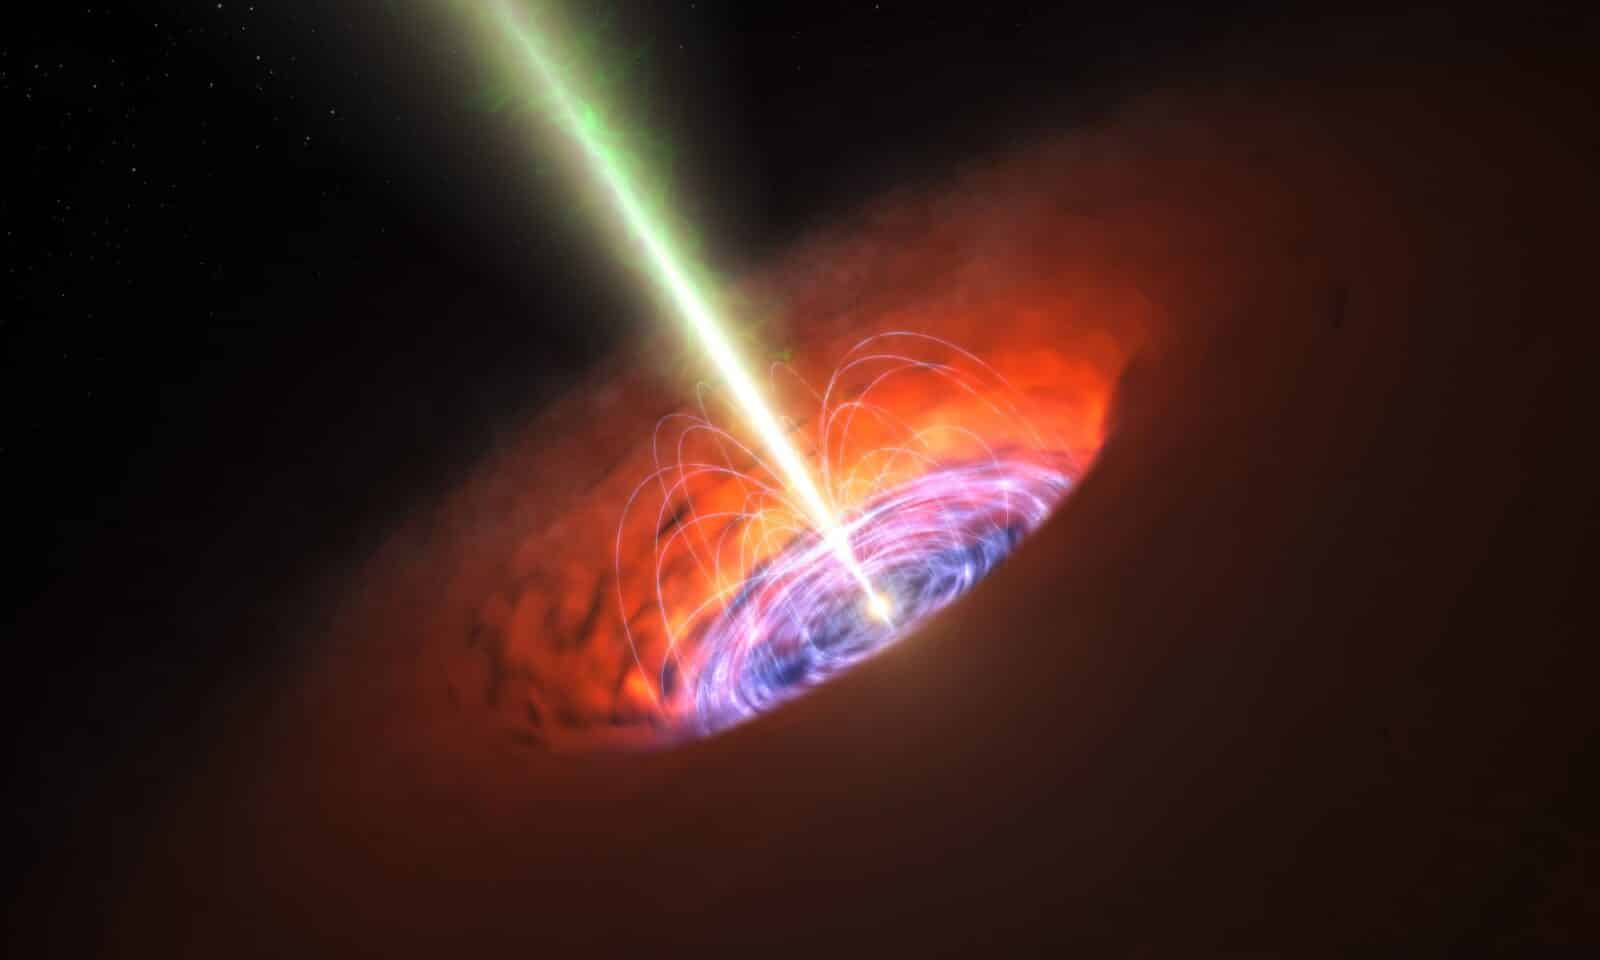 ジェイムズ・ウェッブ宇宙望遠鏡が観測史上最古の超巨大ブラックホールを発見